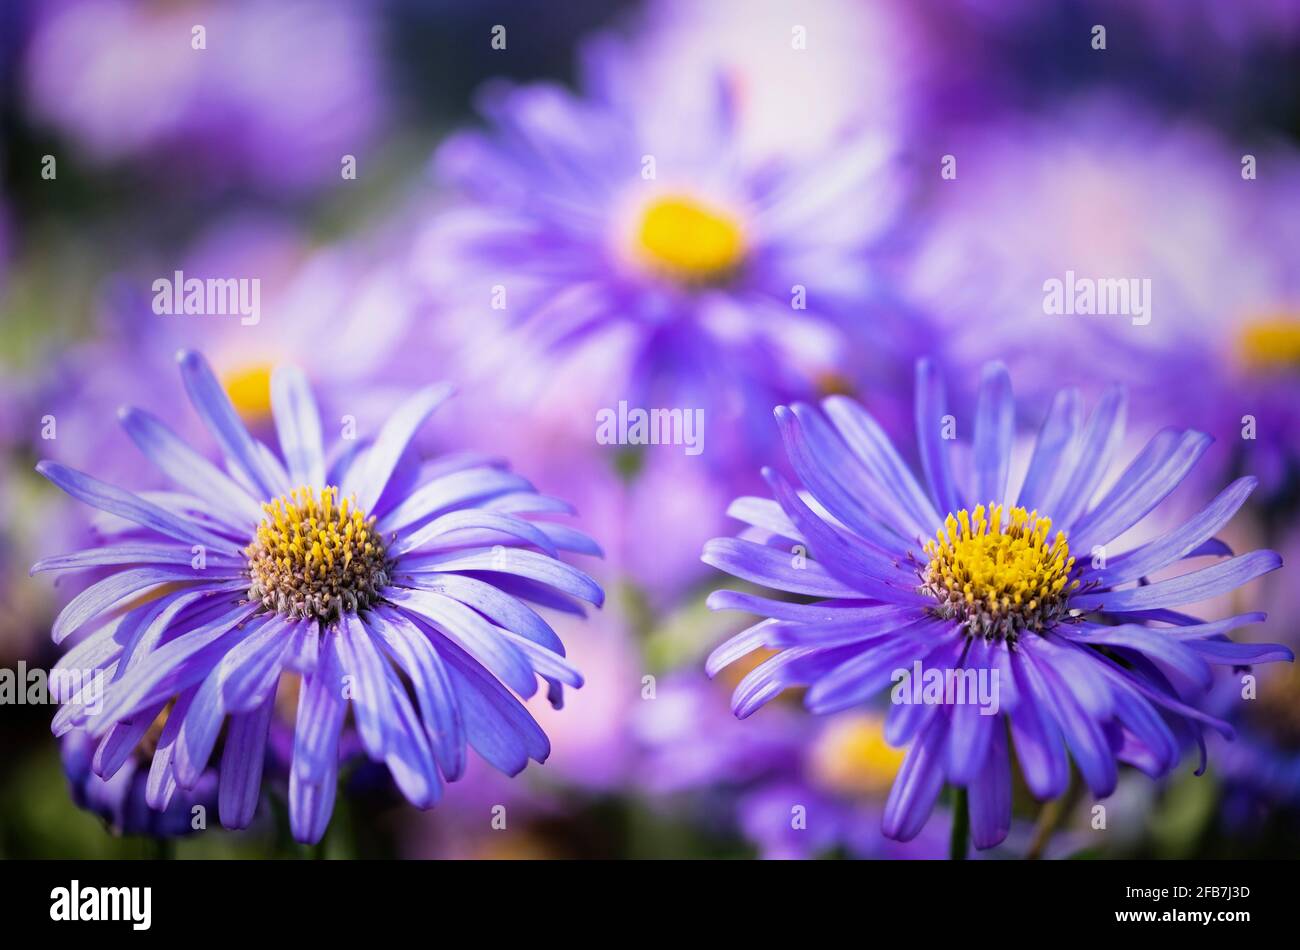 Assers, Asteraceae, primo piano di due fiori viola con stampa gialla. Foto Stock